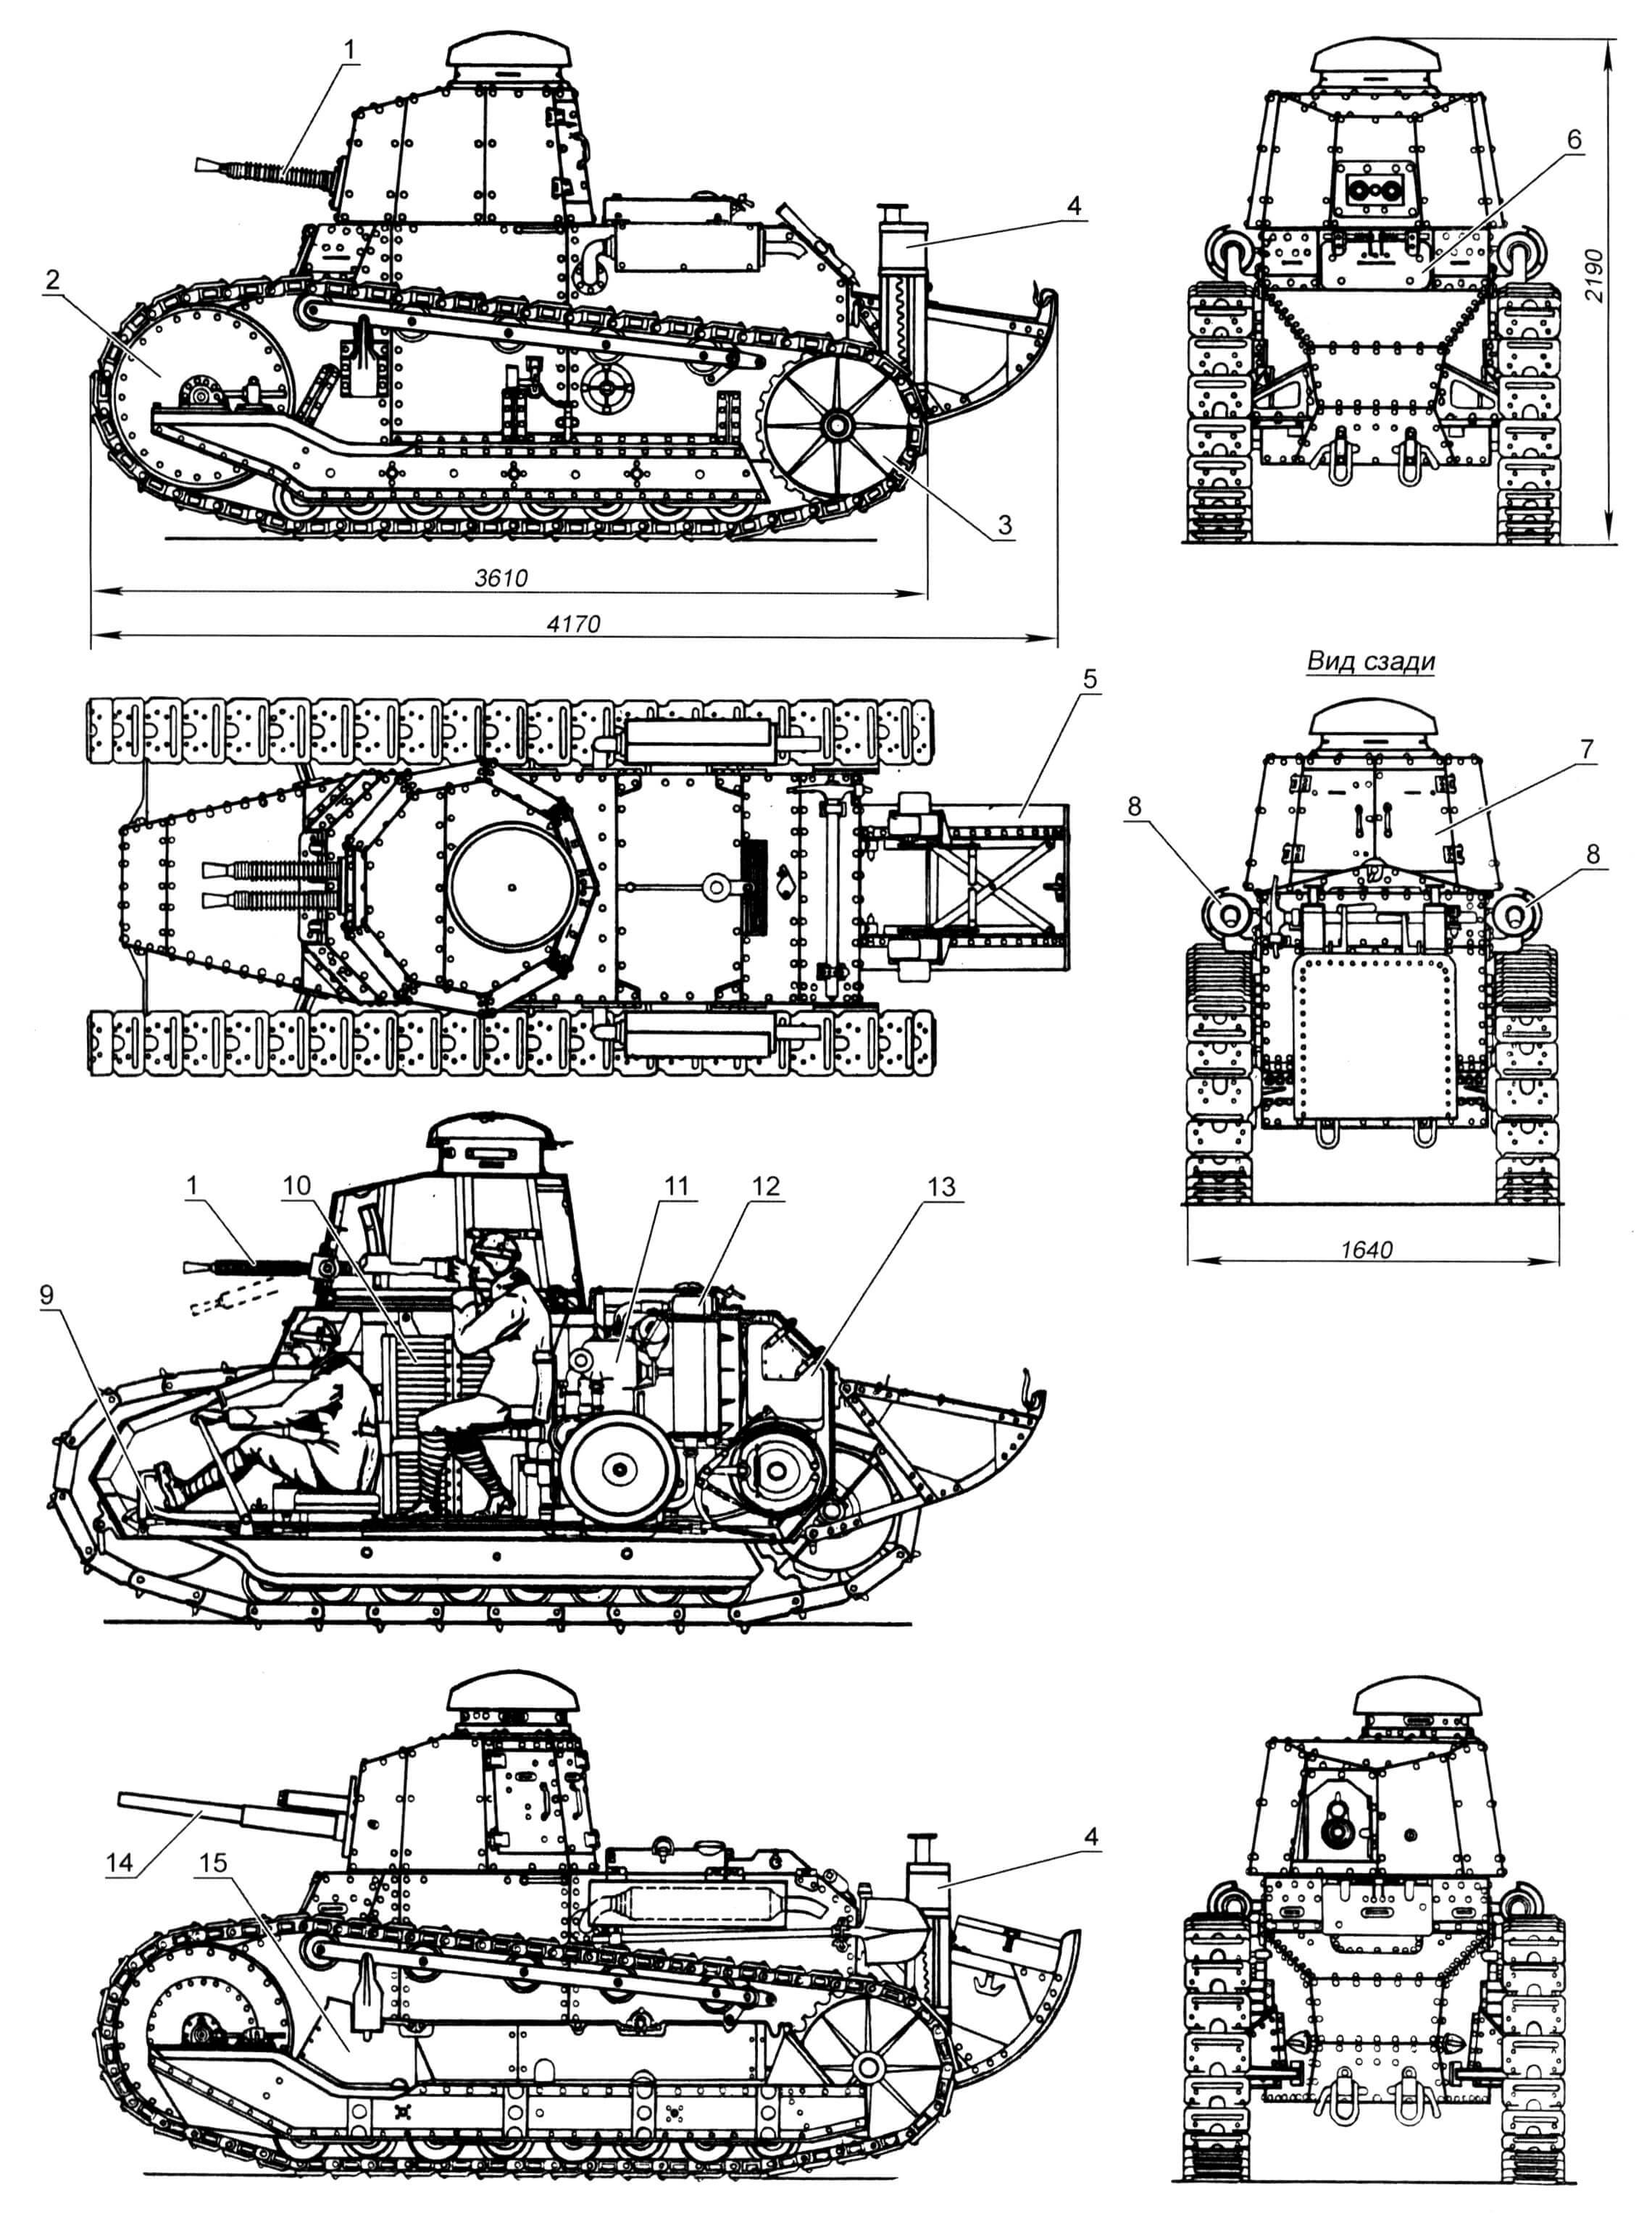 Легкий ганк «Фиат-3000»: 1 - 6,5-мм спаренный пулемет обр. 1929 года; 2 - направляющее колесо; 3 - ведущее колесо; 4 - домкрат; 5 - «хвост»; 6 - люк водителя; 7 - двустворчатый башенный люк; 8 - глушитель; 9 - педаль тормоза; 10 - стеллажи для боекомплекта; 11 - двигатель; 12 - радиатор; 13 - бензобак; 14 - 37-мм пушка; 15 - фальшборт